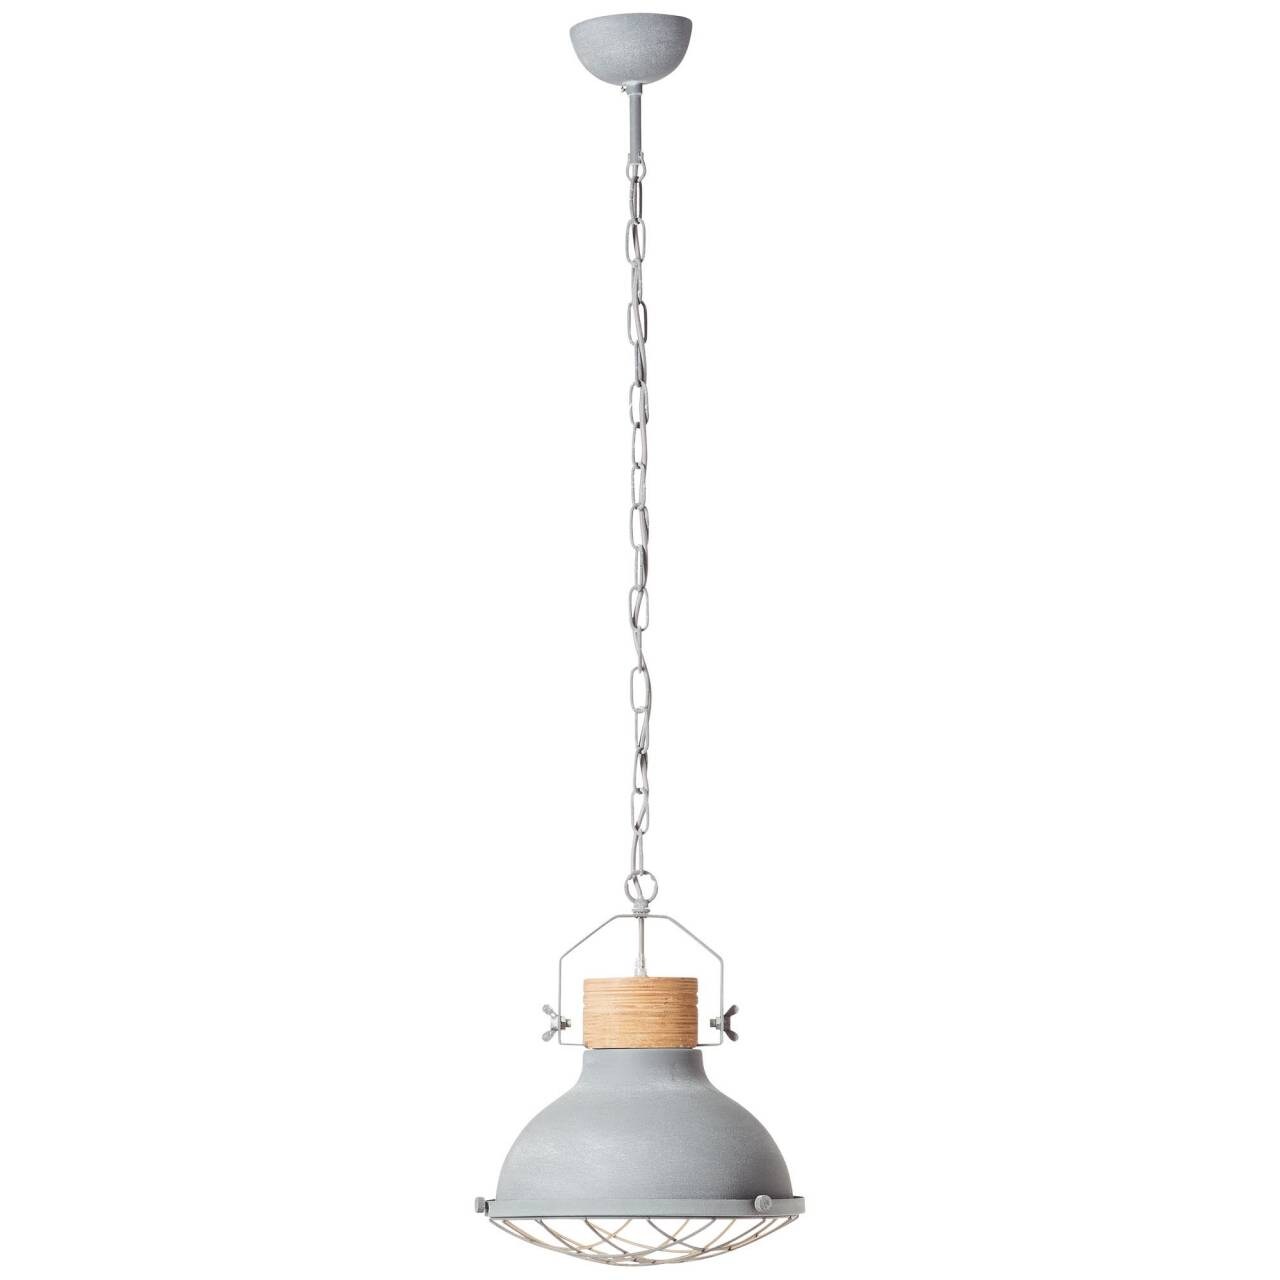 BRILLIANT Lampe Emma Pendelleuchte 33cm grau Beton   1x A60, E27, 40W, geeignet für Normallampen (nicht enthalten)   Ket